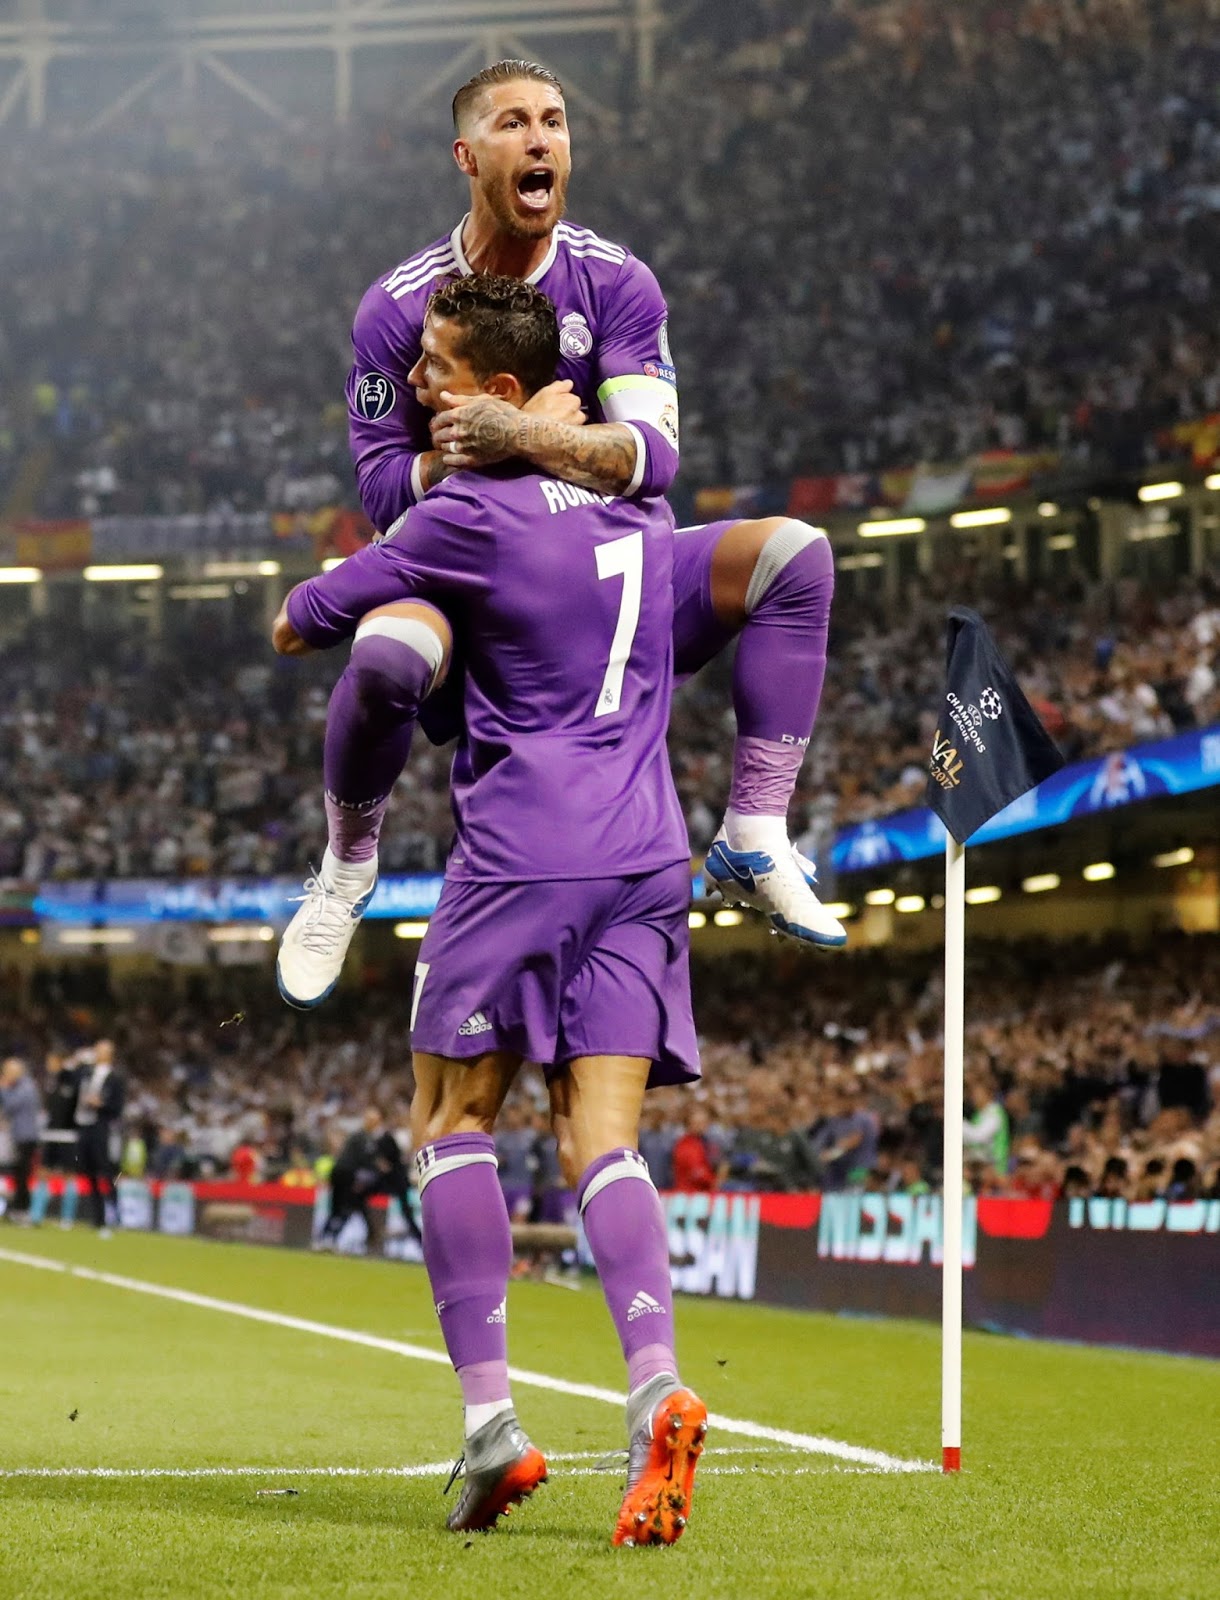 Nếu bạn muốn tận hưởng mọi khoảnh khắc của trận đấu Juventus vs Real Madrid, hãy tải về ảnh chất lượng cao của Cristiano Ronaldo. Những hình ảnh này sẽ cho bạn một cái nhìn cận cảnh về mọi tình huống trong trận đấu, đặc biệt là những bàn thắng của Ronaldo.